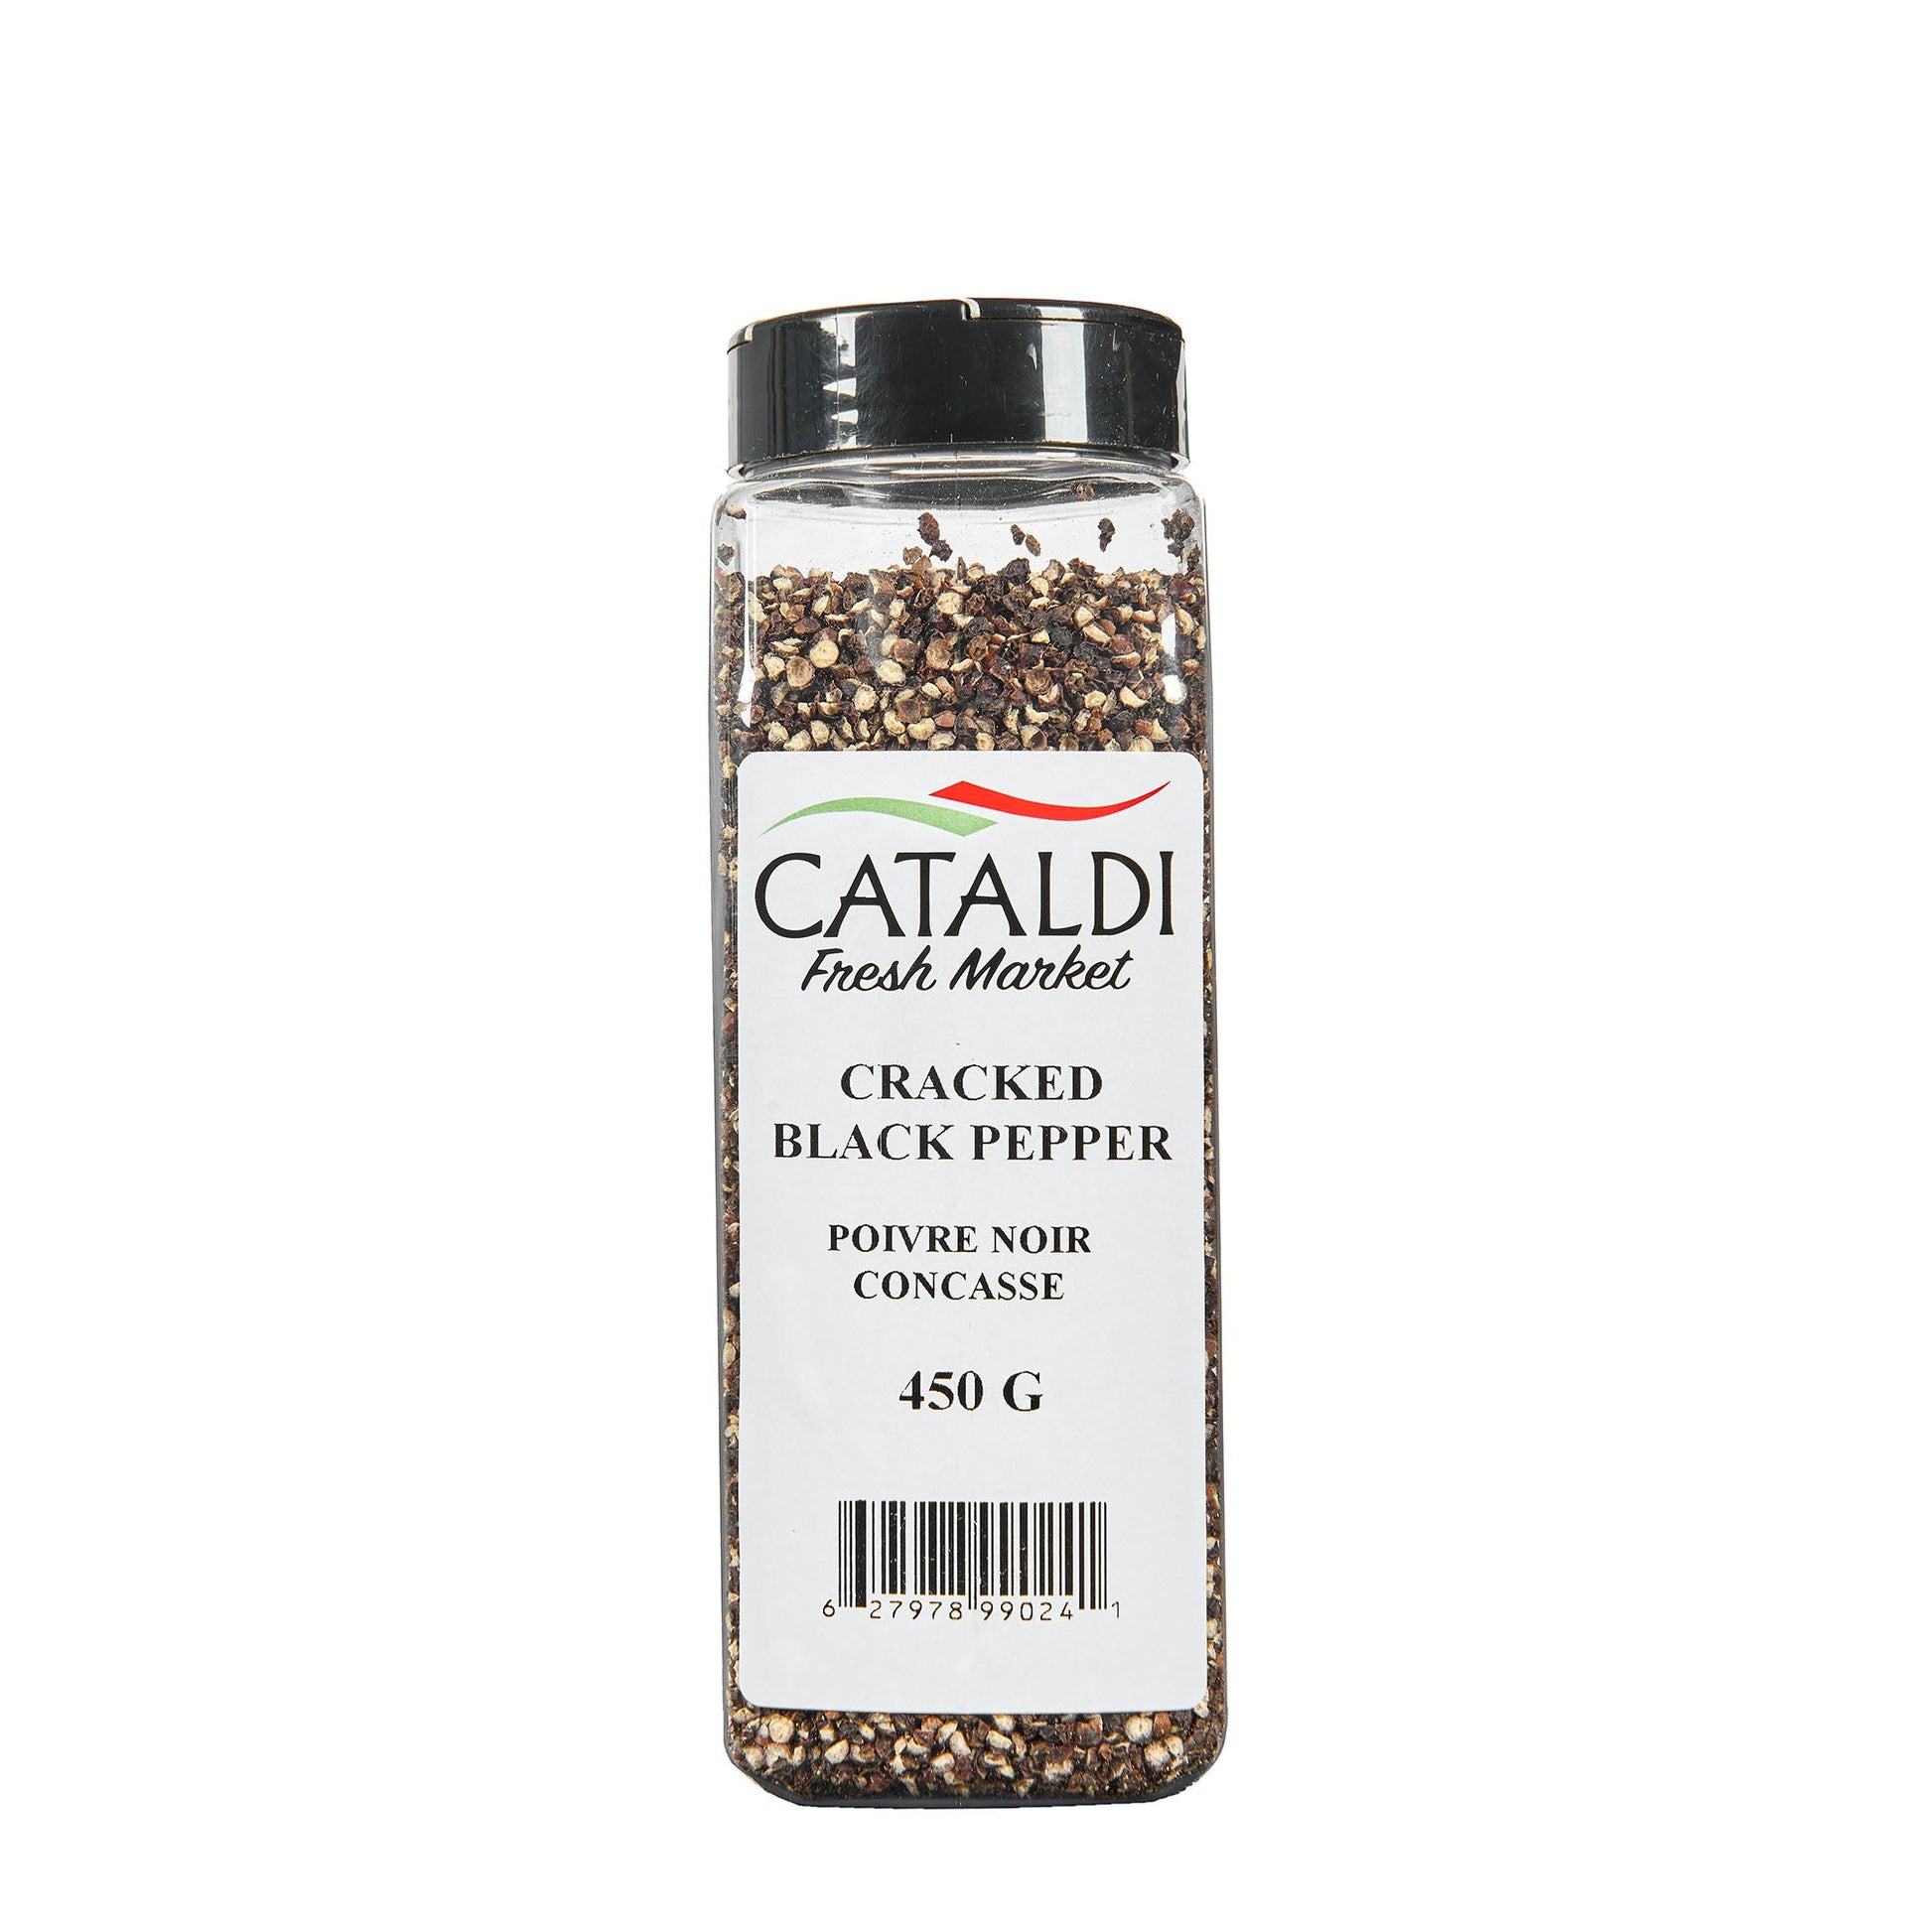 Cataldi Black Pepper Crack450G